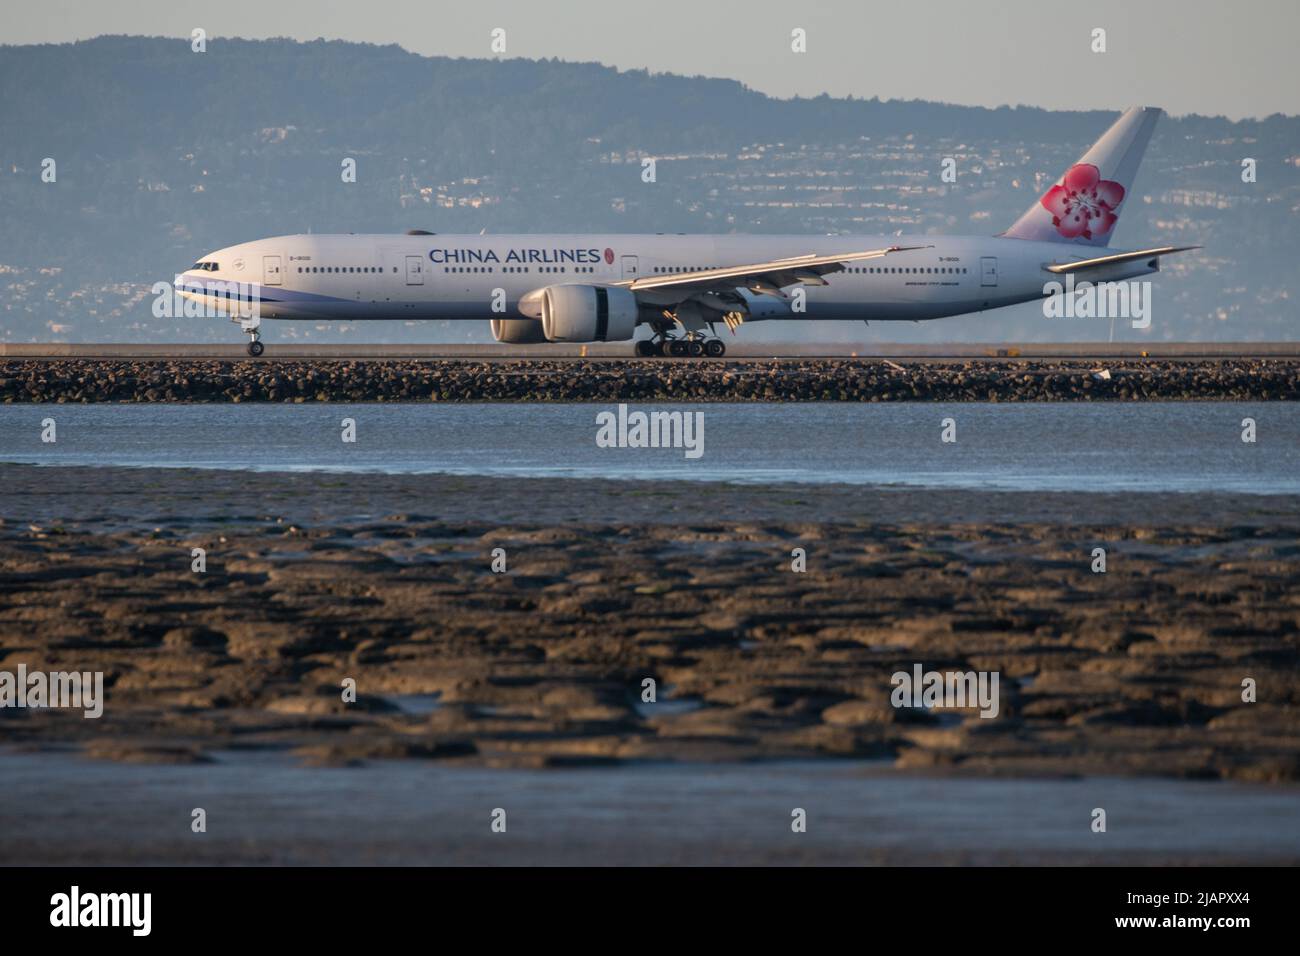 Un avion de China Airlines sur la piste d'atterrissage au-dessus d'un vasime à l'aéroport international de San Francisco à Millbrae, en Californie. Banque D'Images